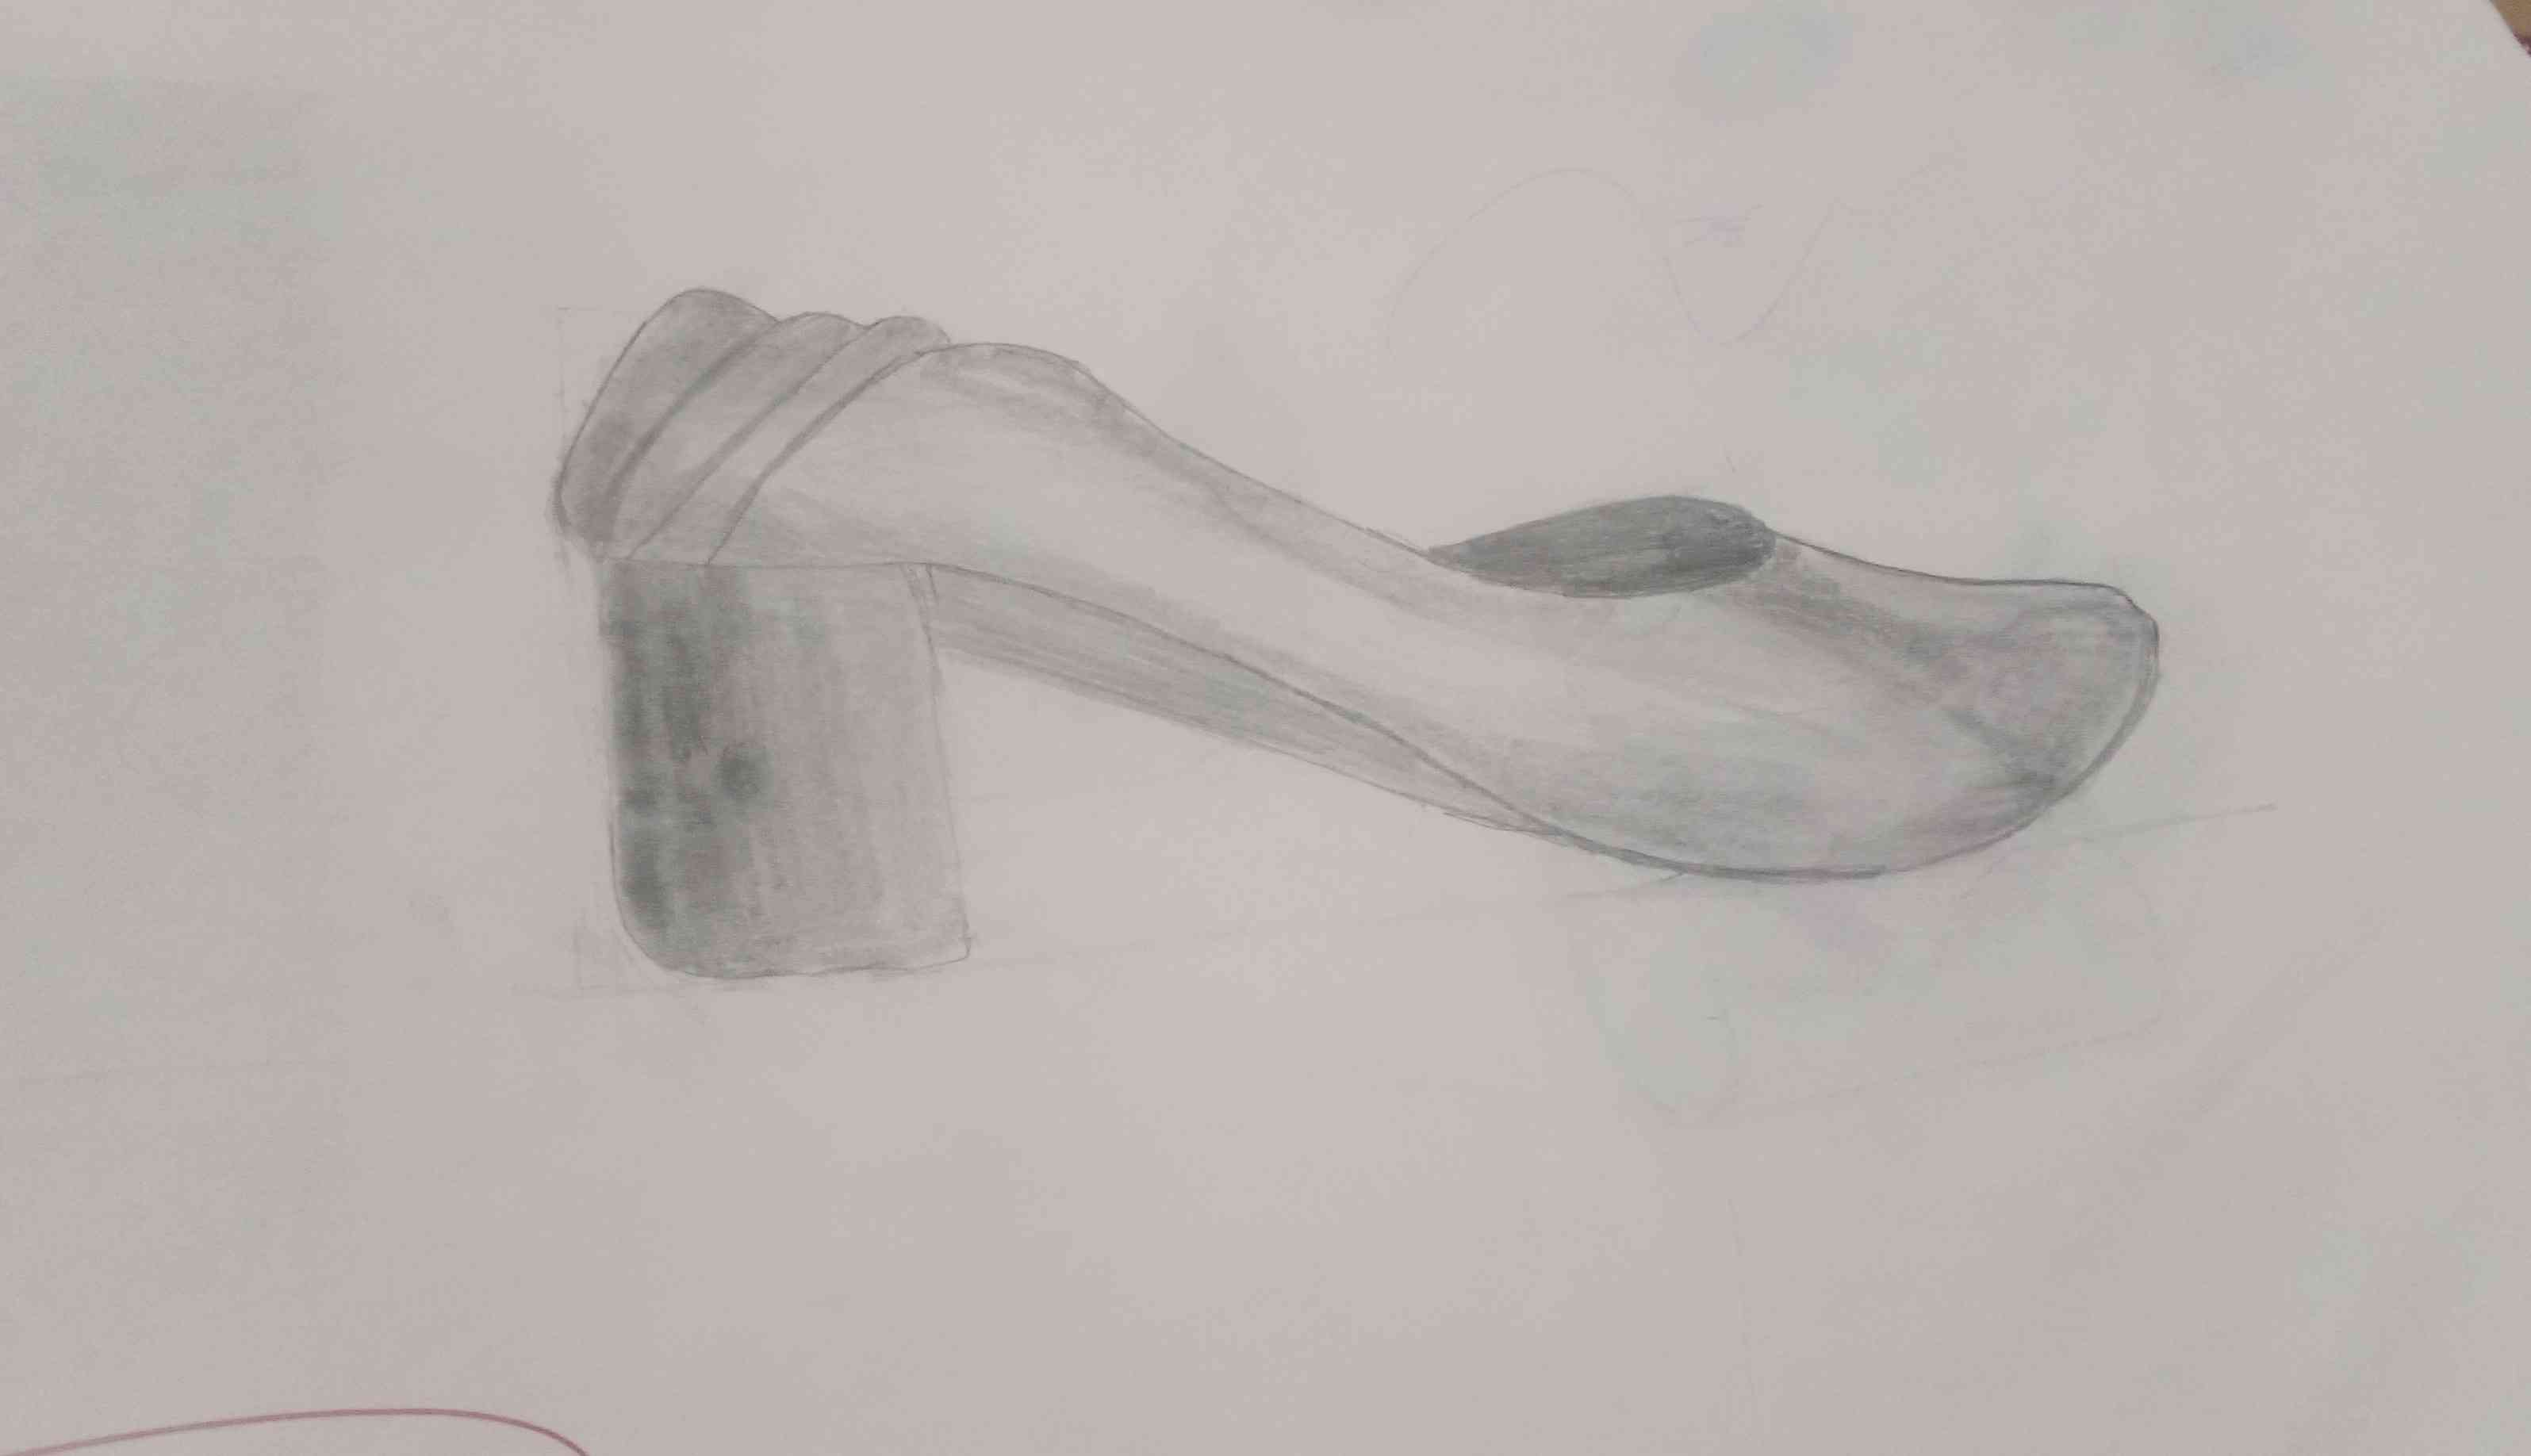 کفش معلممه تو کلاس طراحیش کردم چطوره
معلمم کفششو از پاش در آورد گفت بکشیم😂😂😂😂😂😂